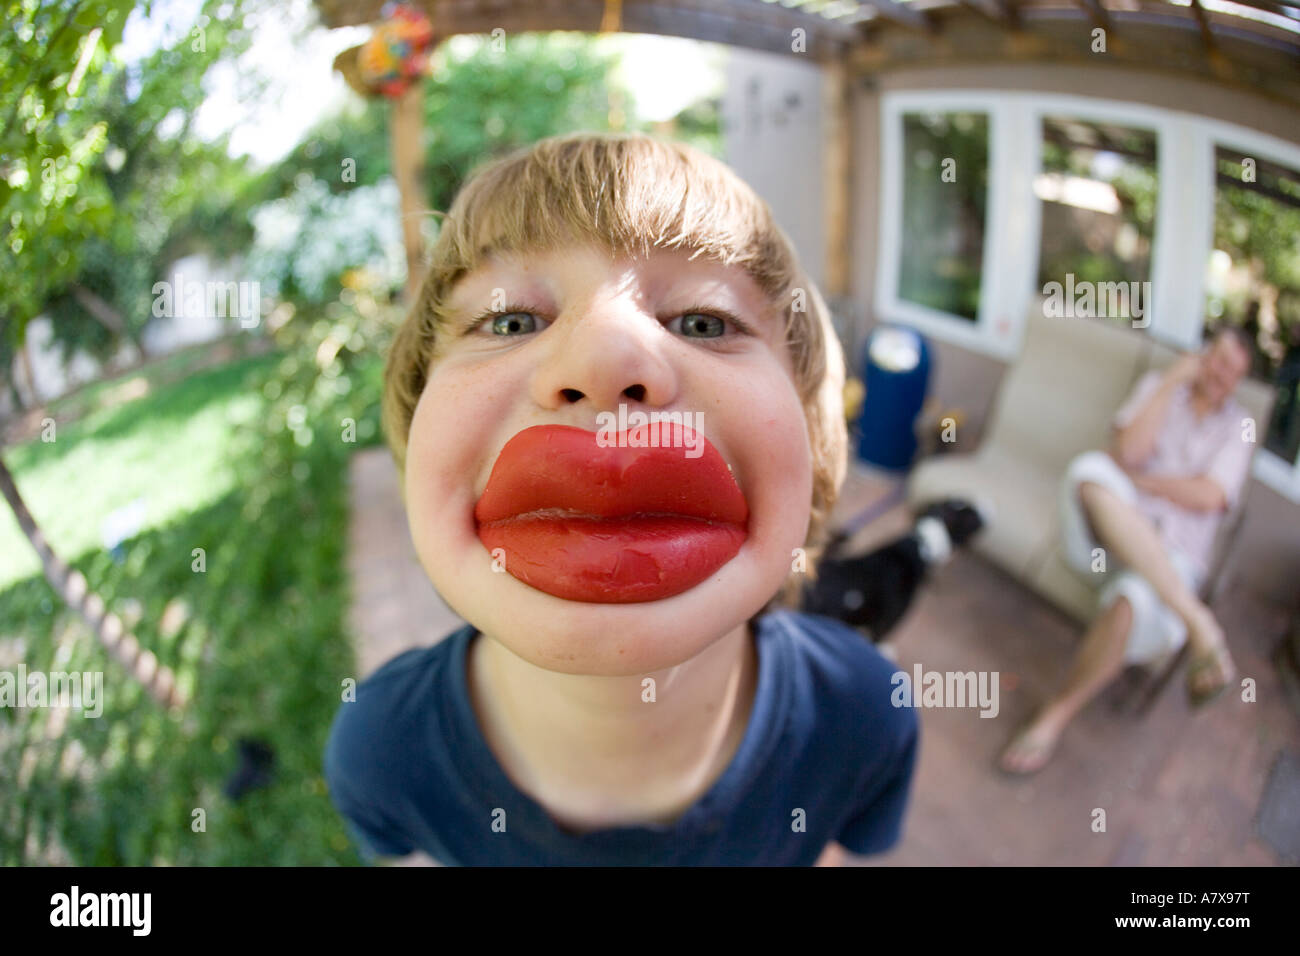 Junge mit roten gewachste Lippen, fisheye-Objektiv Stockfoto